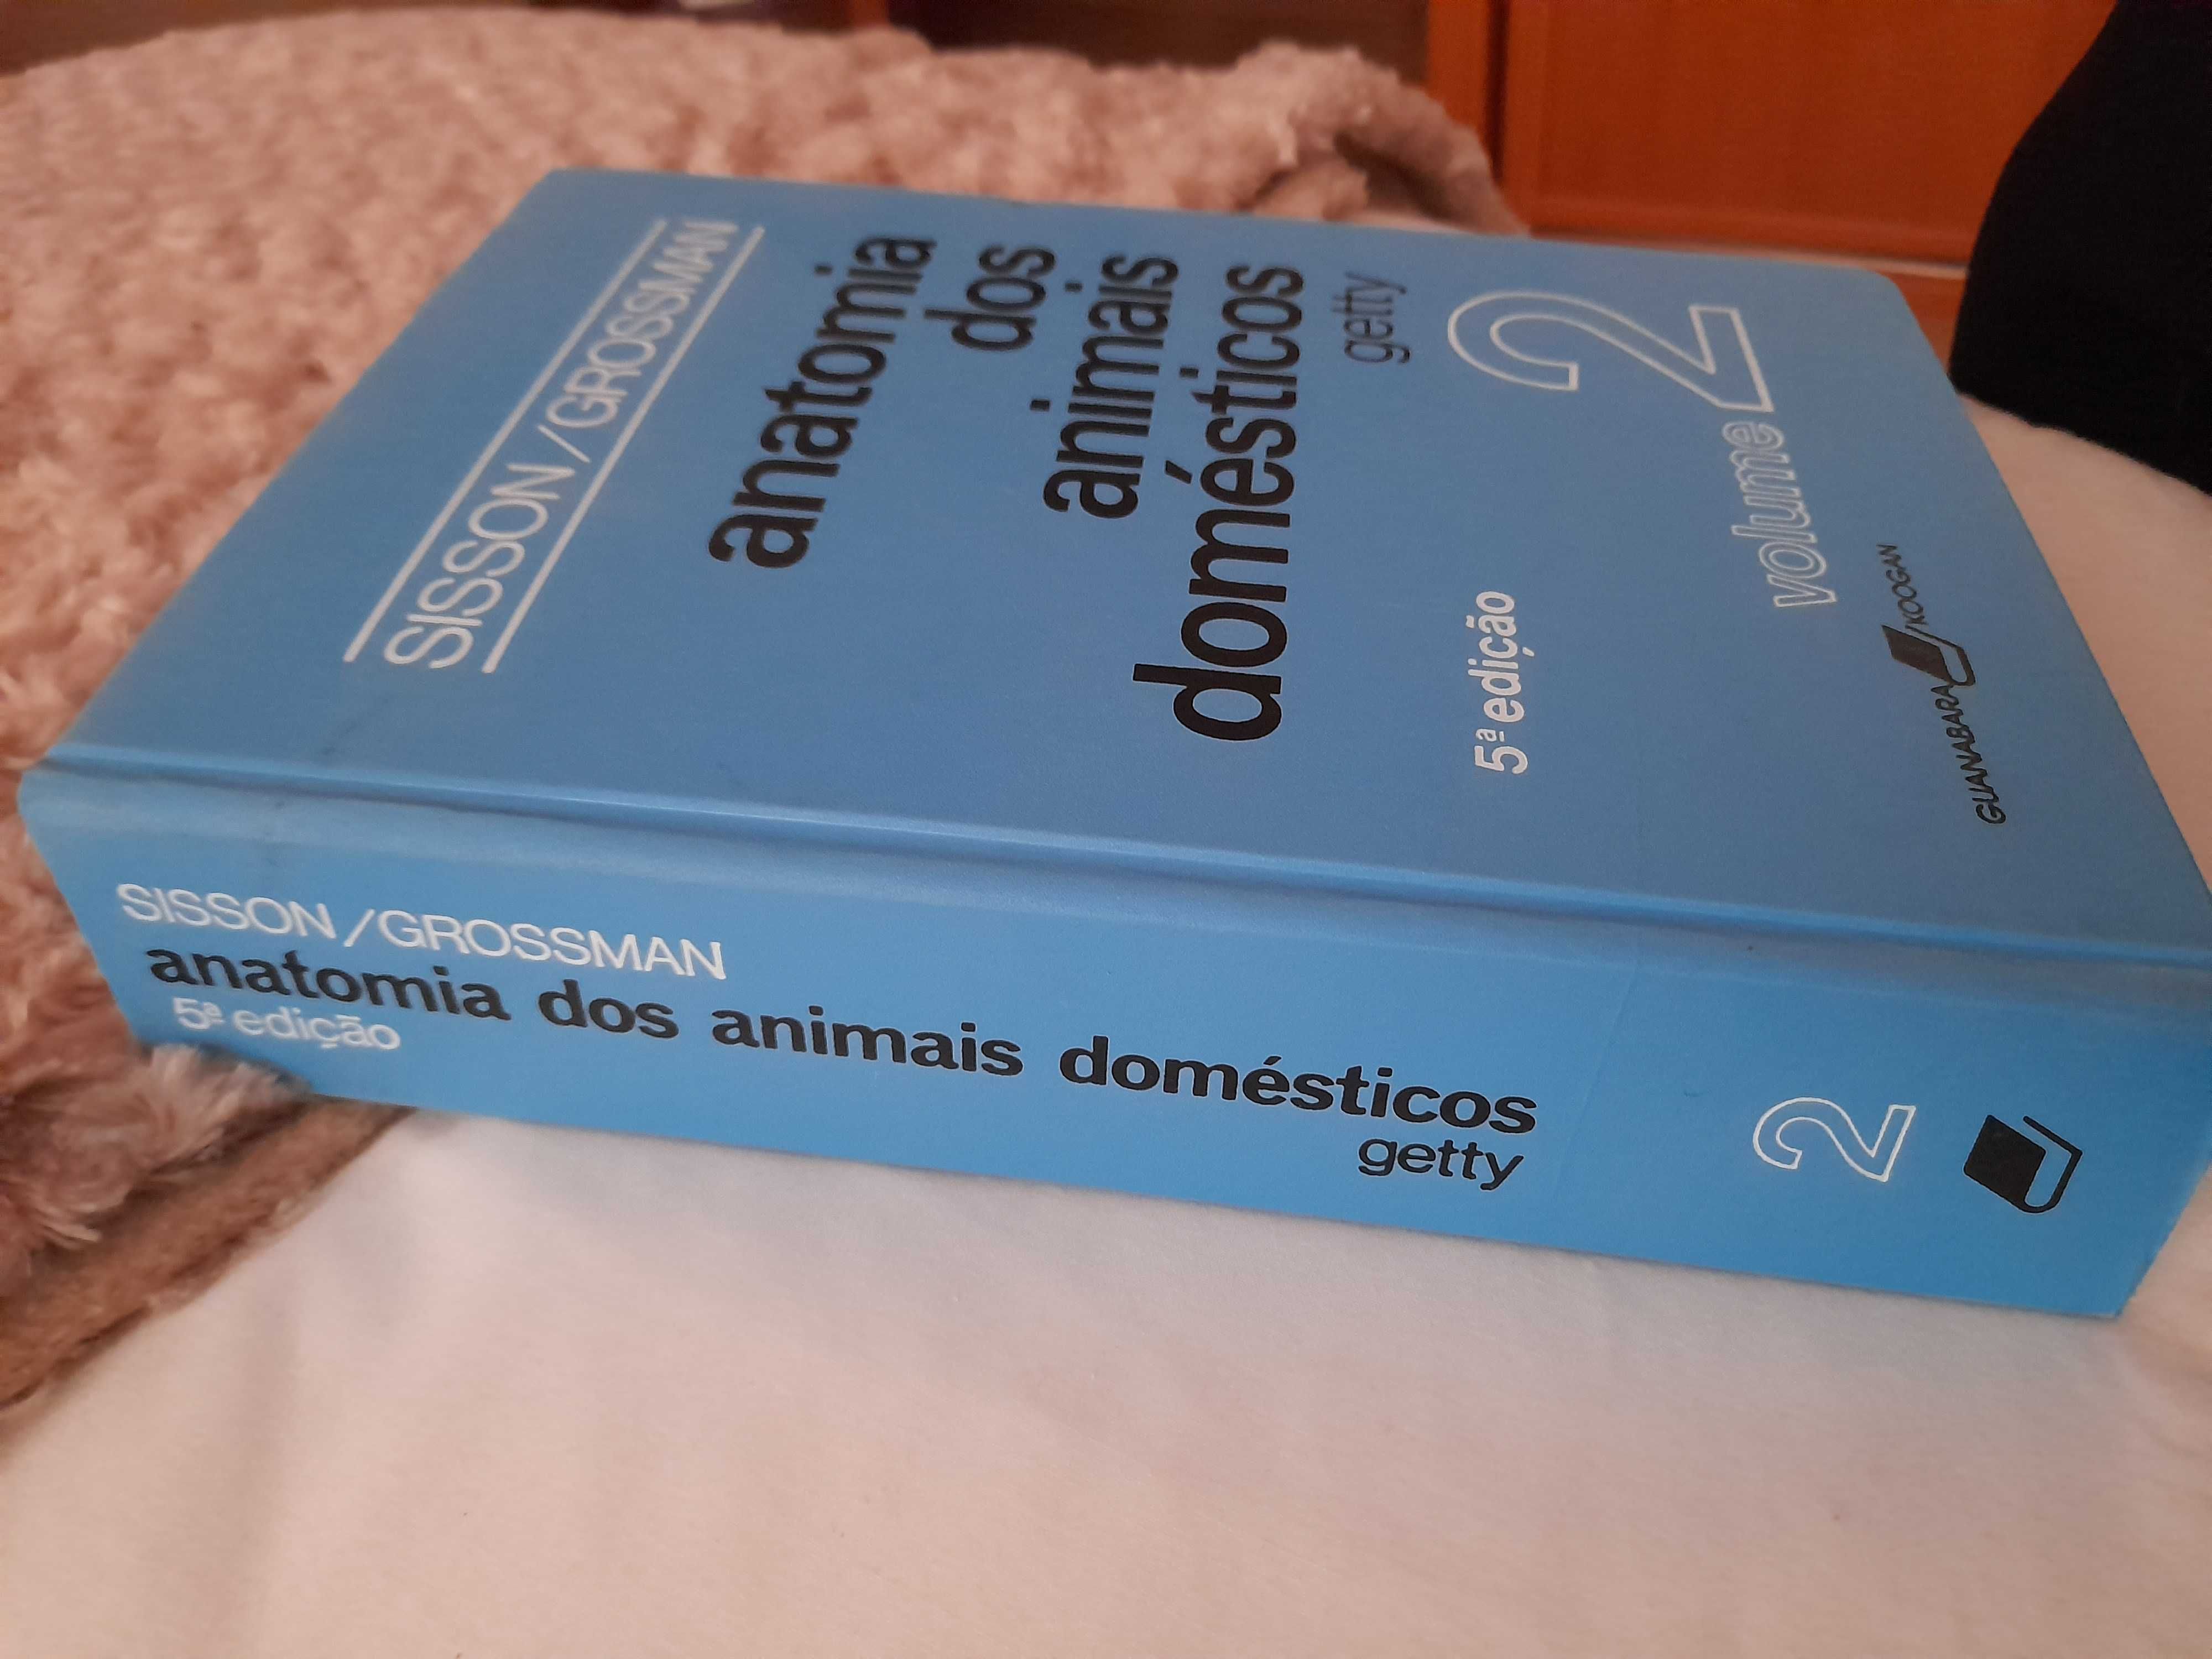 Anatomia dos animais domésticos Sisson/Grossman vol. 1 e vol. 2